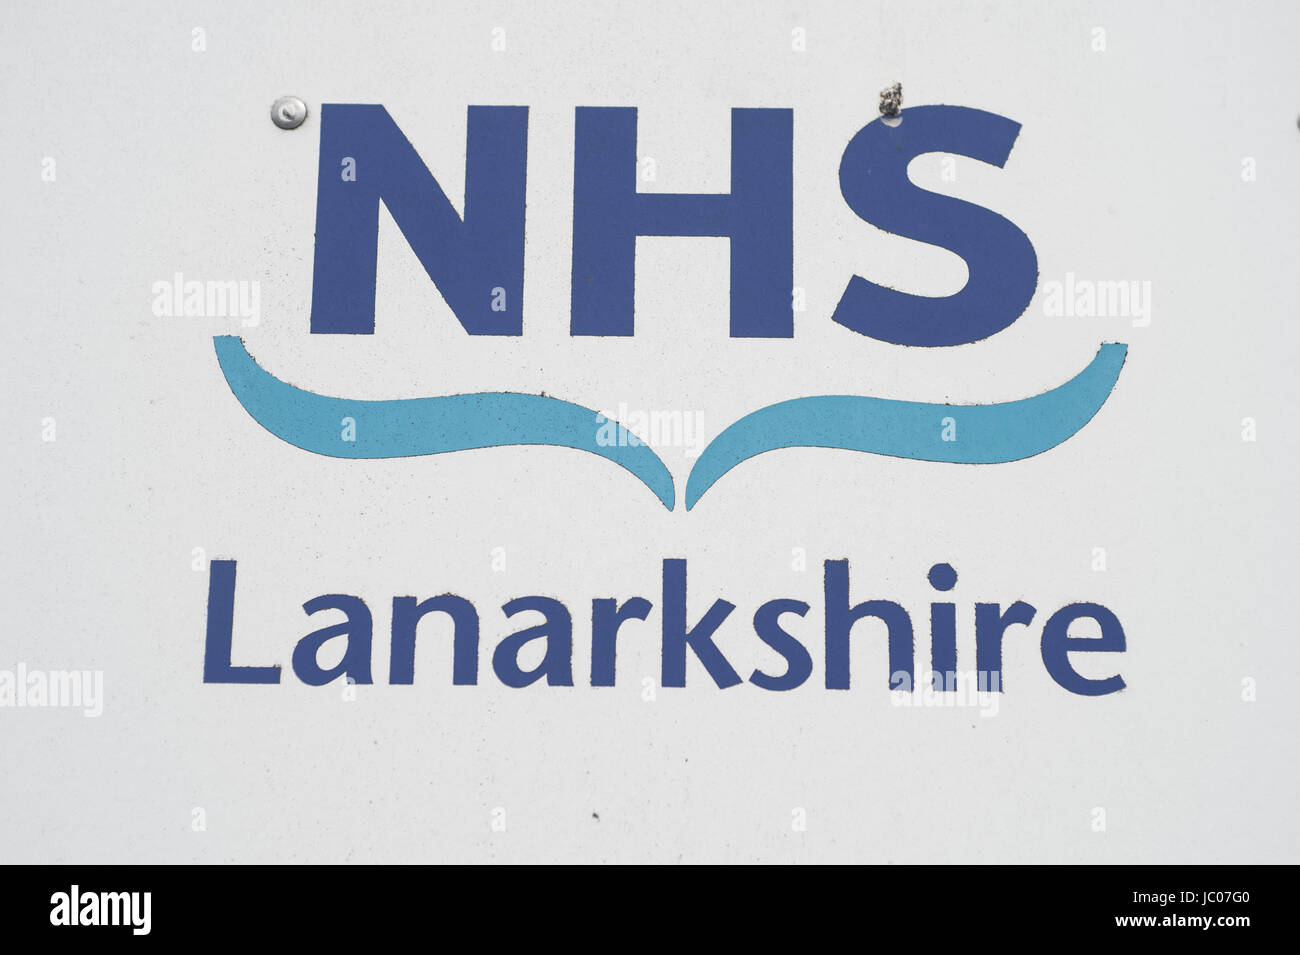 Centrale Lanarkshire NHS Health Centre a été affectée par la récente cyber-attaque. En vedette : où : Cumbernauld, Royaume-Uni Quand : 13 mai 2017 Source : WENN.com Banque D'Images